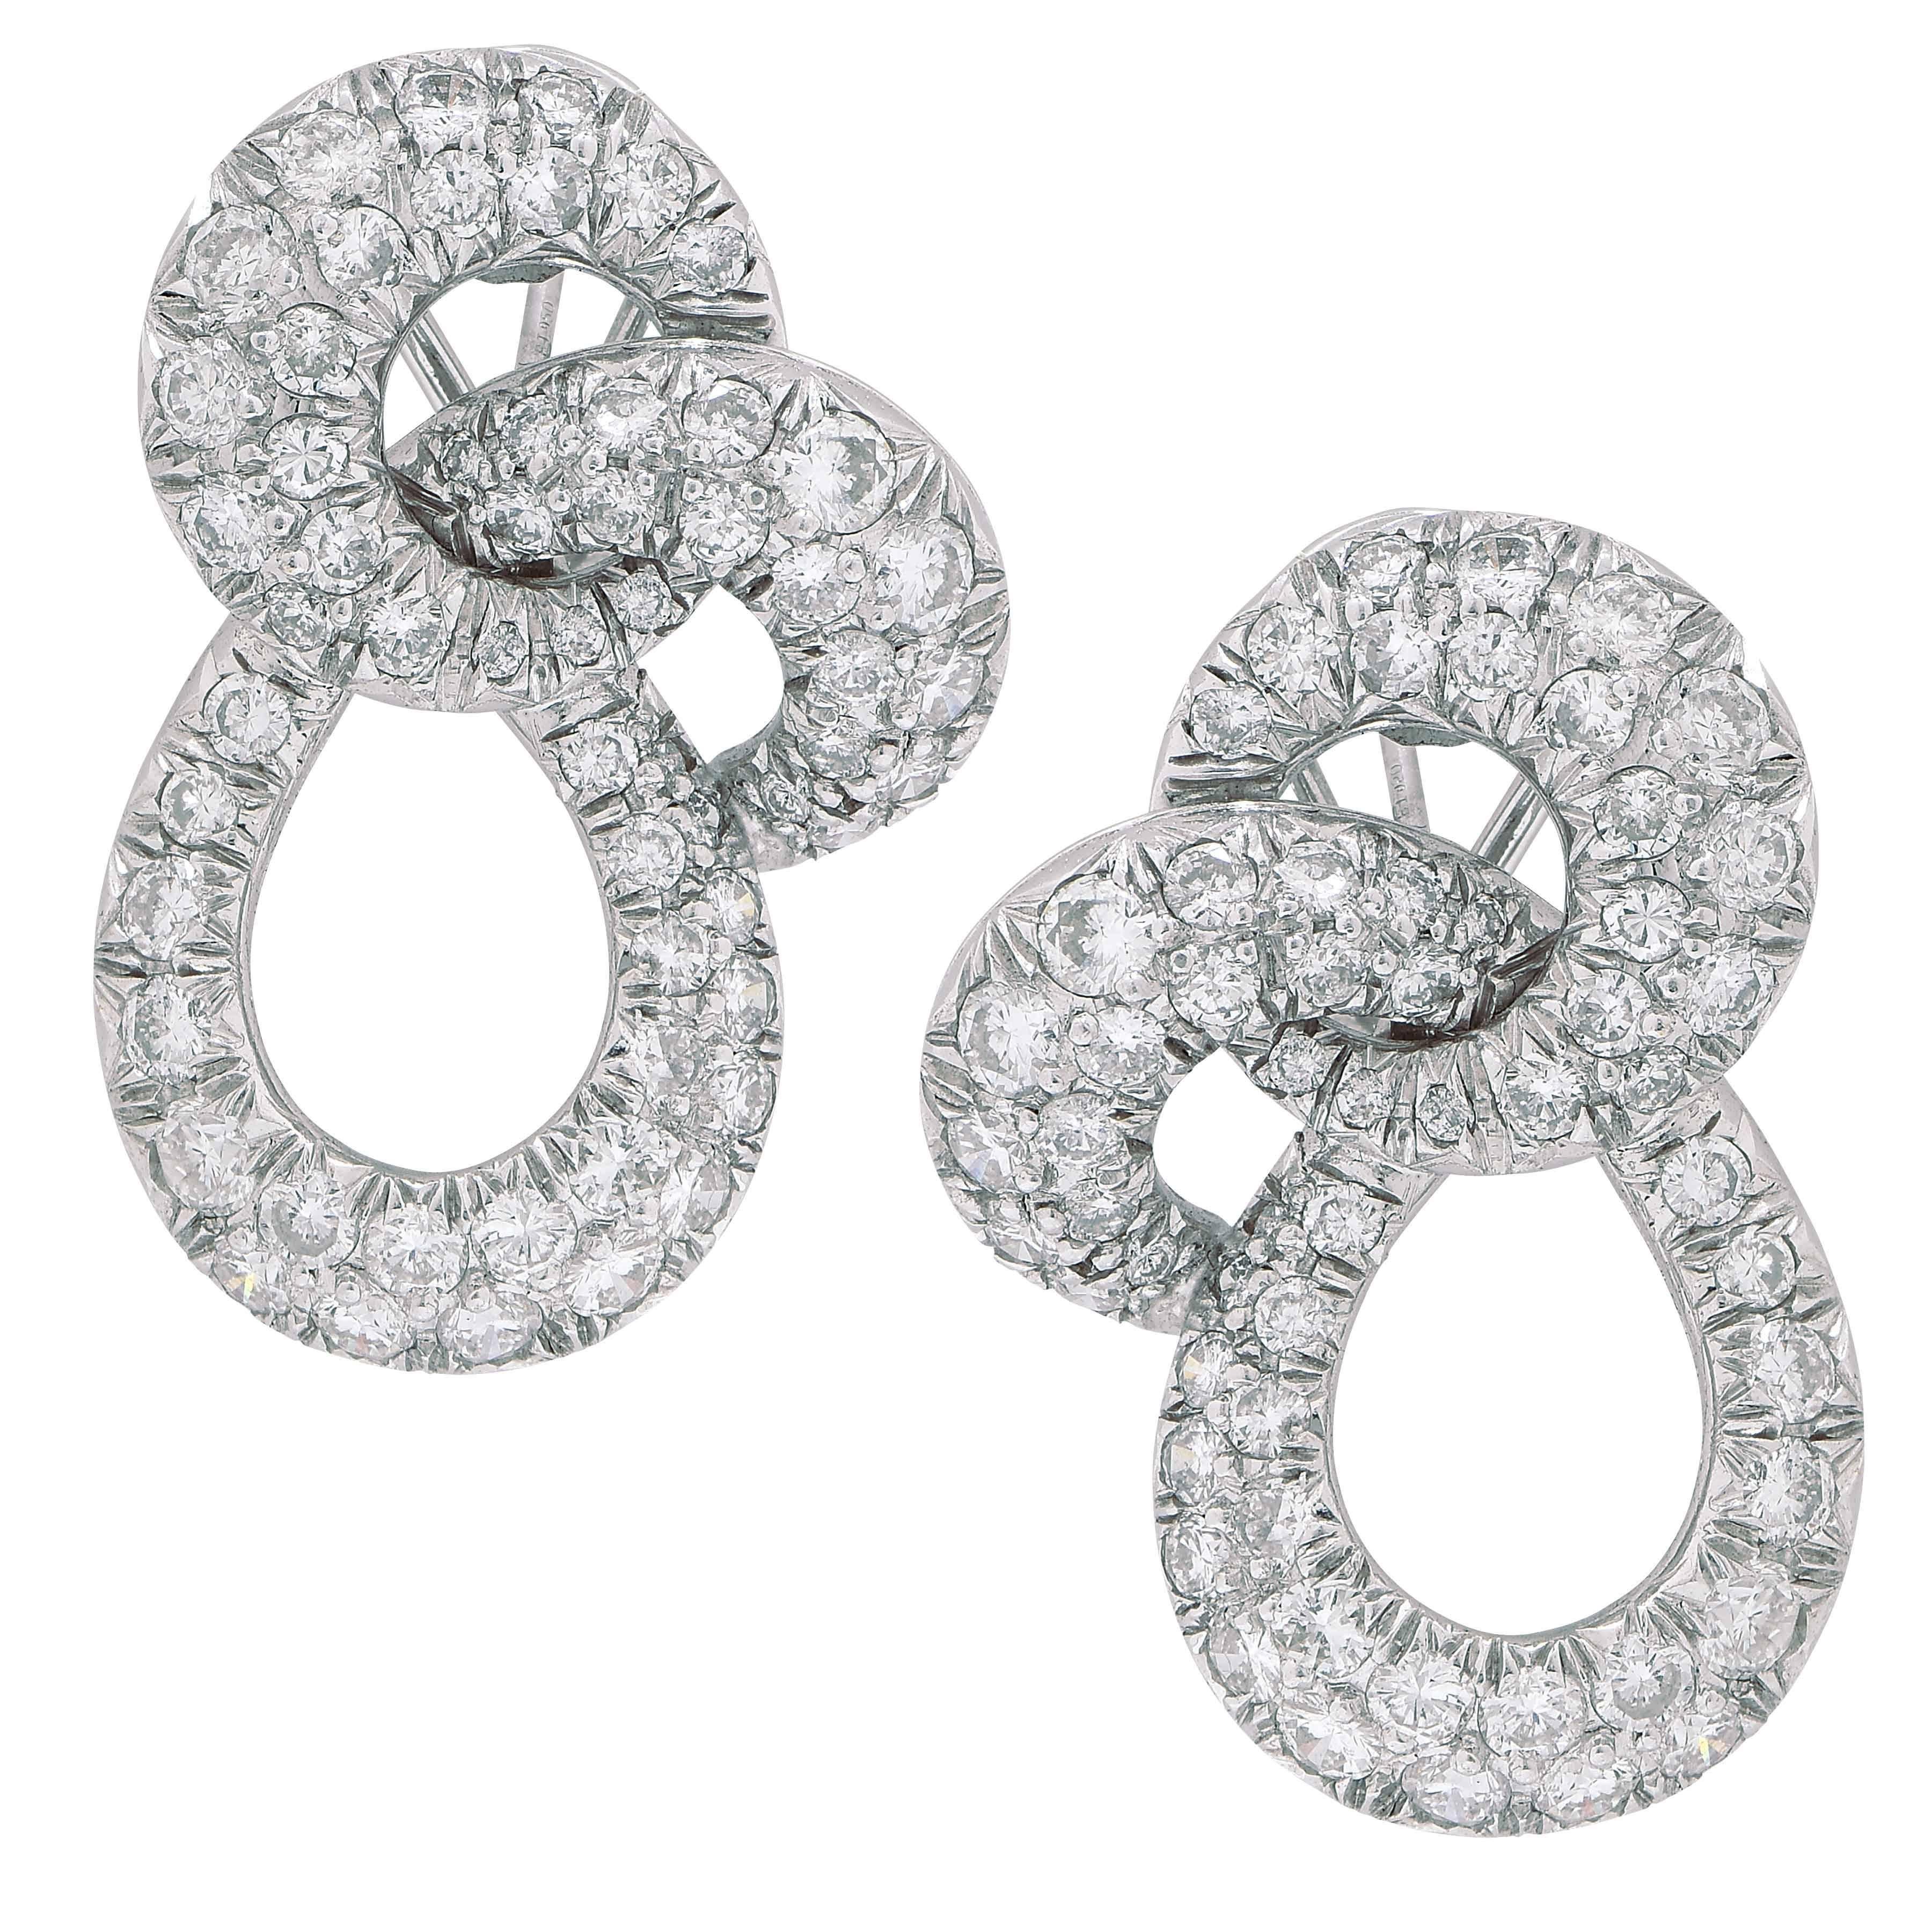 Ces clips d'oreilles extrêmement bien réalisés sont ornés de 104 diamants ronds de taille brillant pesant environ 6 carats. Les diamants sont de couleur F/G et de pureté VS. Le sertissage en pavé sur le devant, et la finition sur le revers sont de